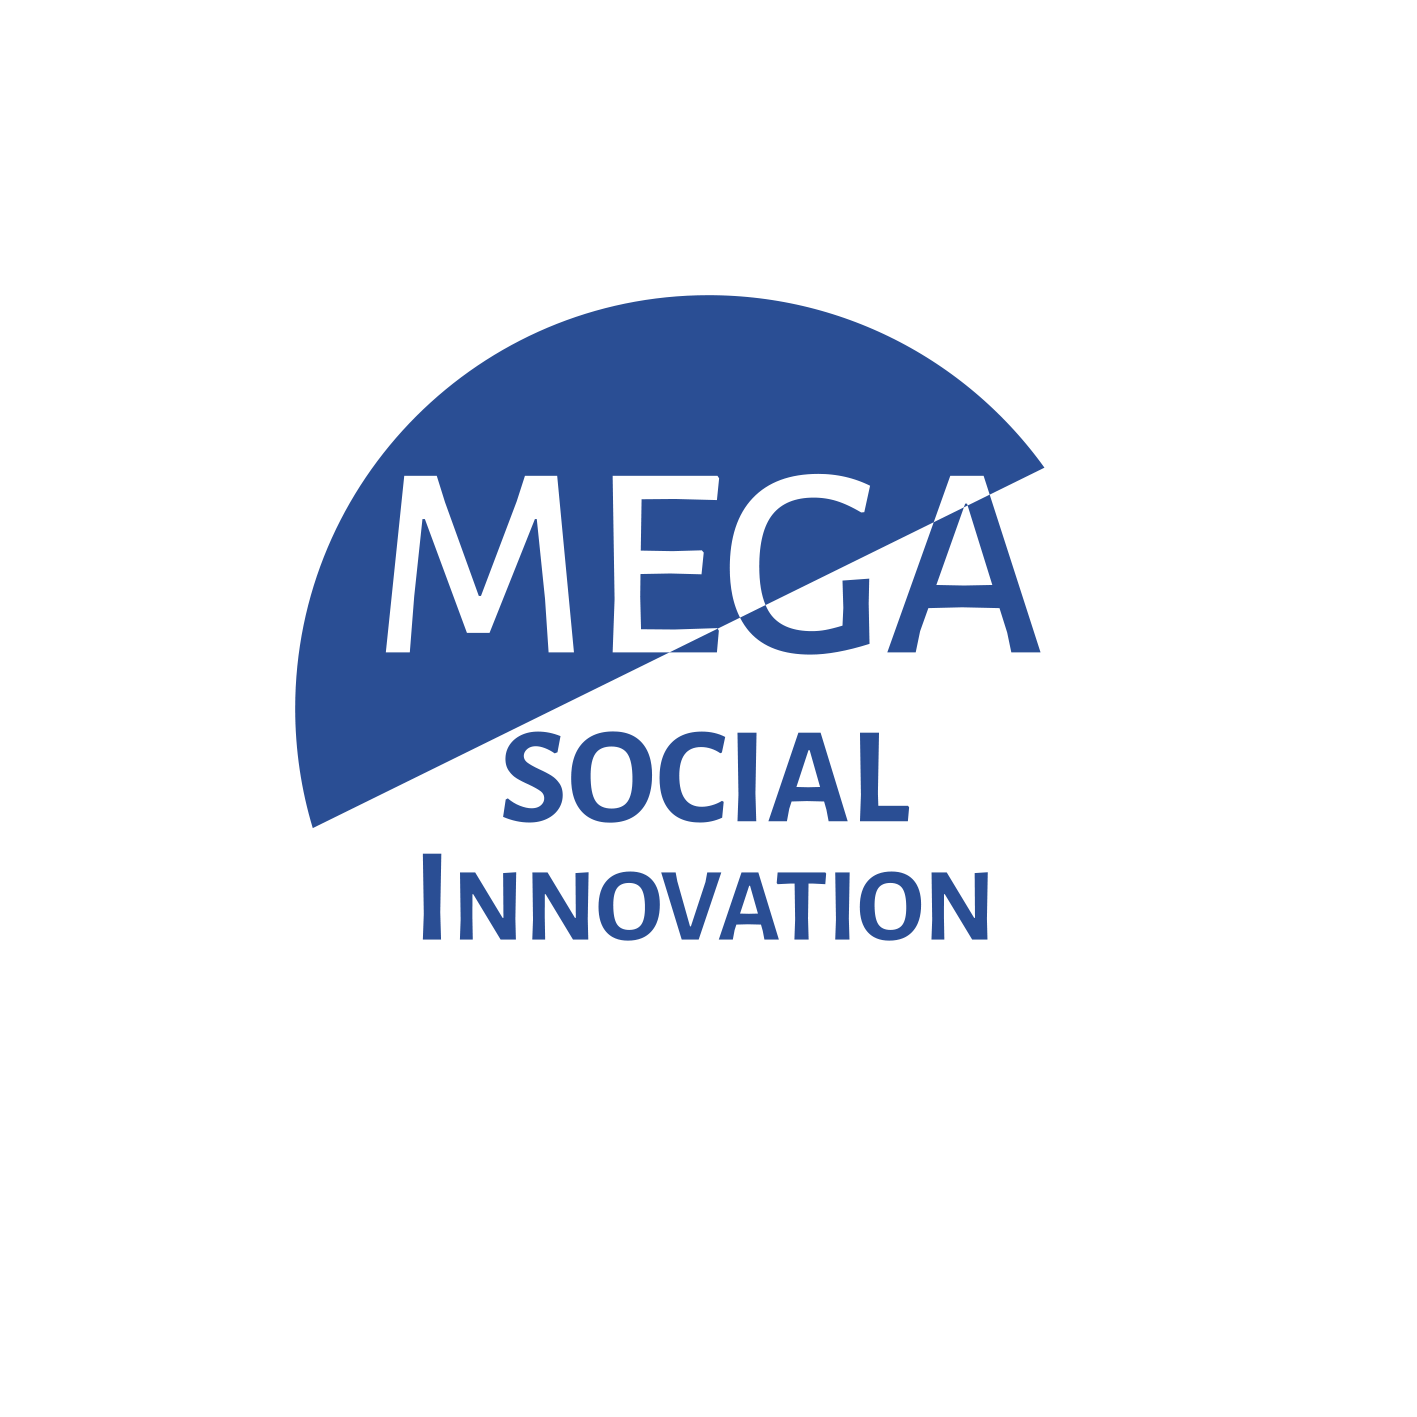 MEGA Social Innovation